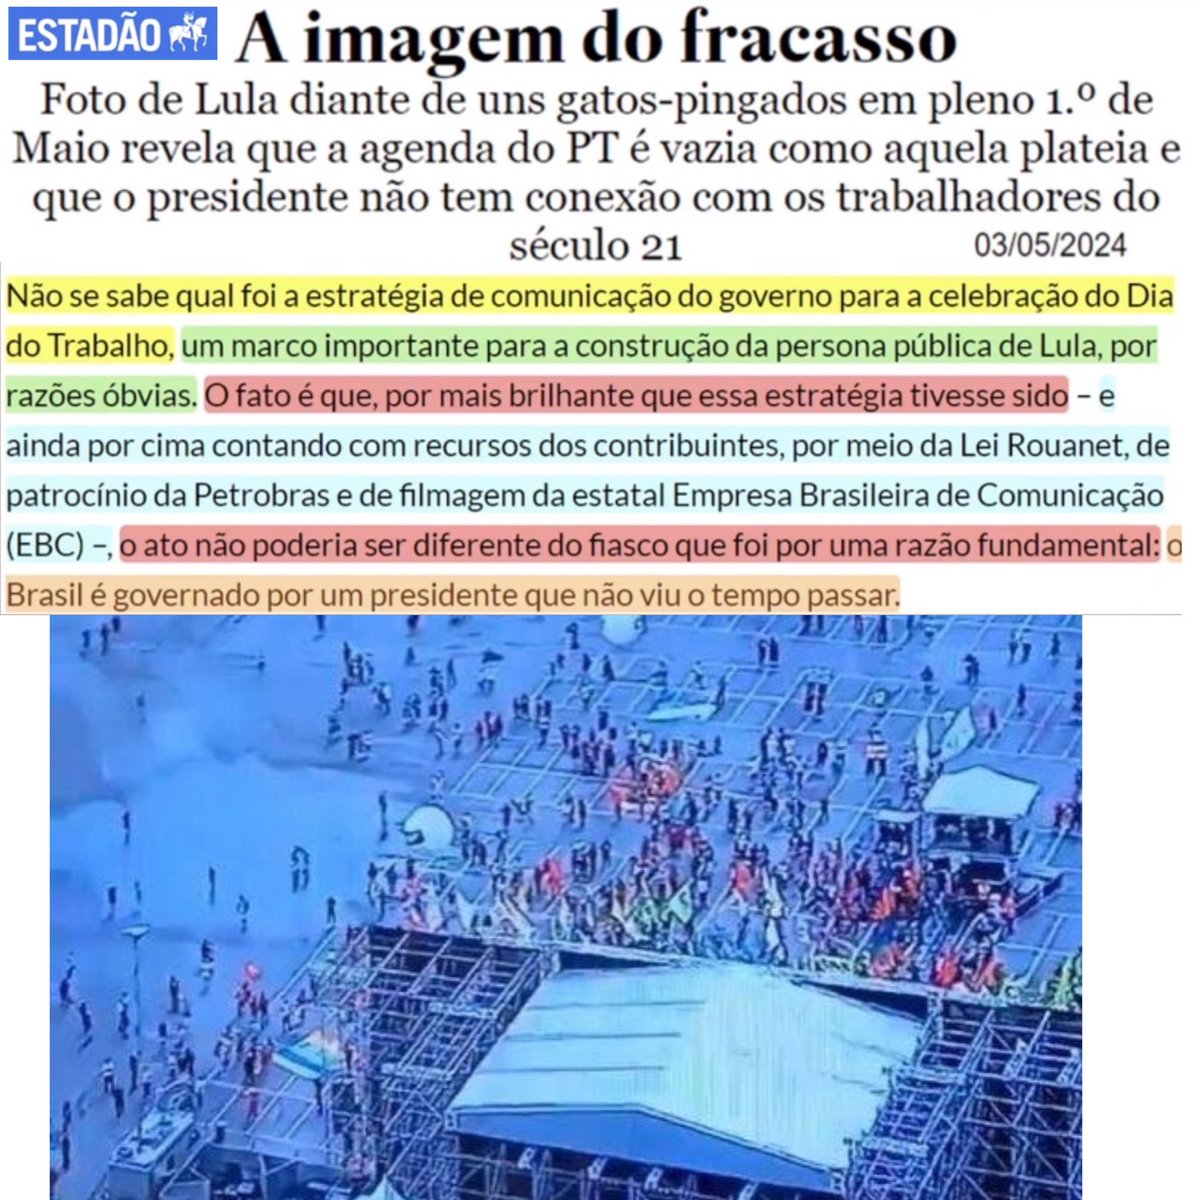 . @jairbolsonaro foi tornado inelegível sob acusação de abuso de poder econômico no 7/SET

Lula pede voto para Boulos fora de período eleitoral (crime) em evento patrocinado por Lei Rouanet, Petrobras e televisionado pela EBC (dinheiro publico)

Justiça: 'Lula, apague o vídeo'🤦‍♂️